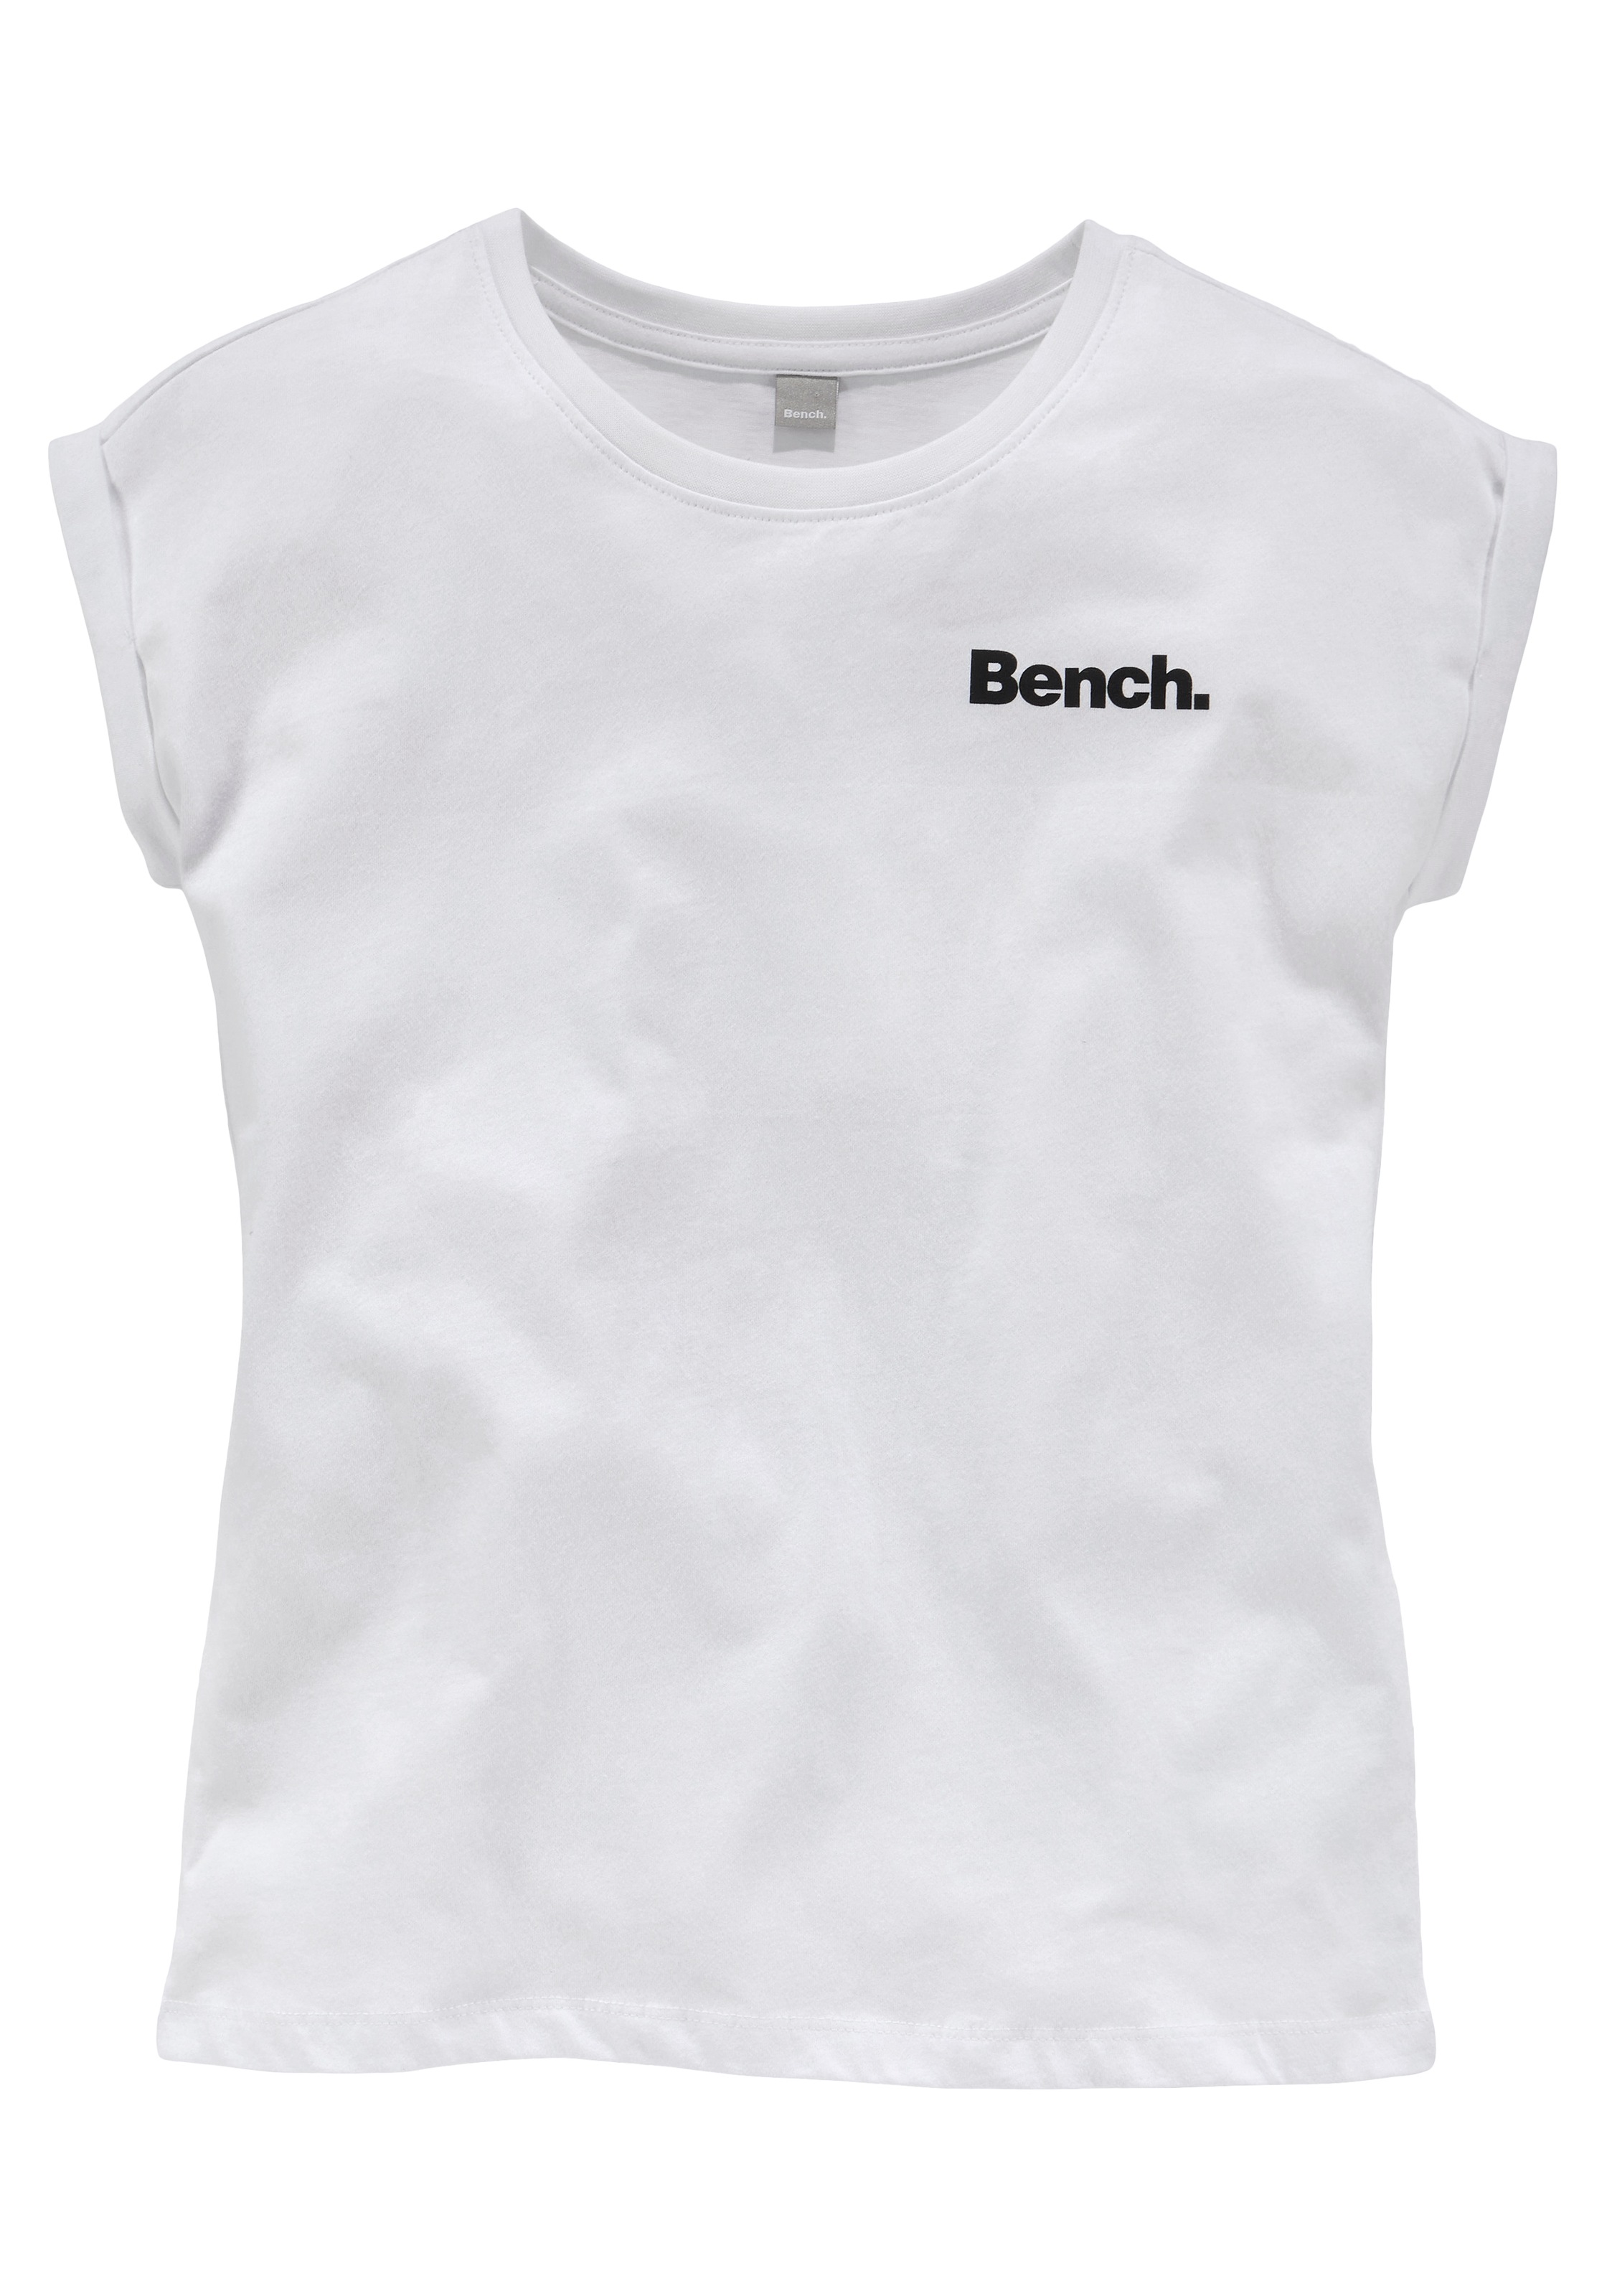 bei T-Shirt, OTTO Logo Bench. online Rückendruck mit